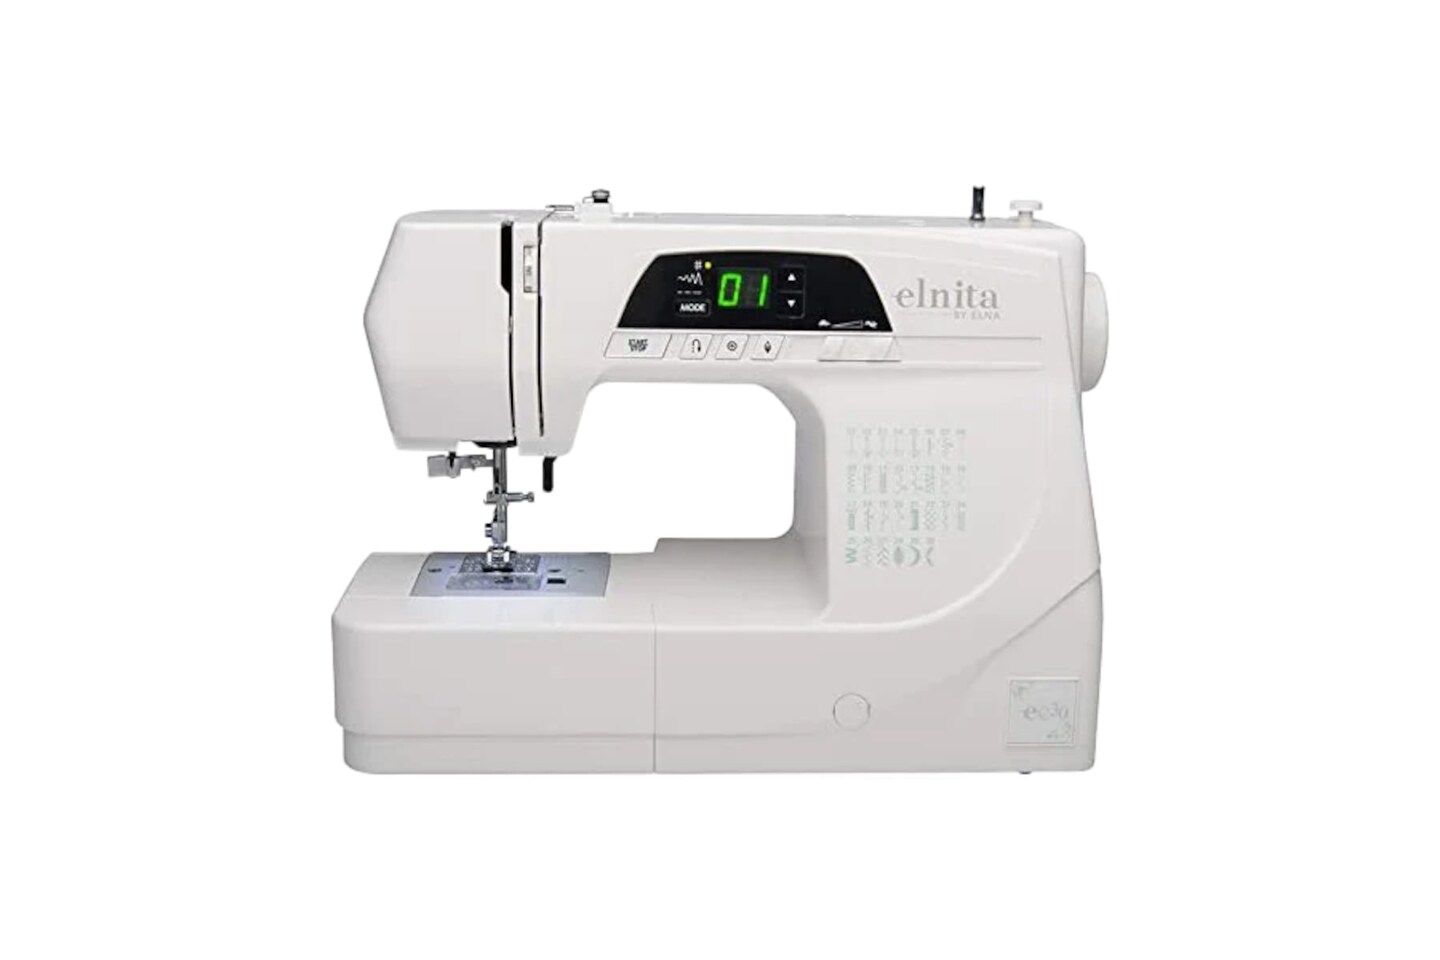 Elna Elnita EC30 Sewing Machine